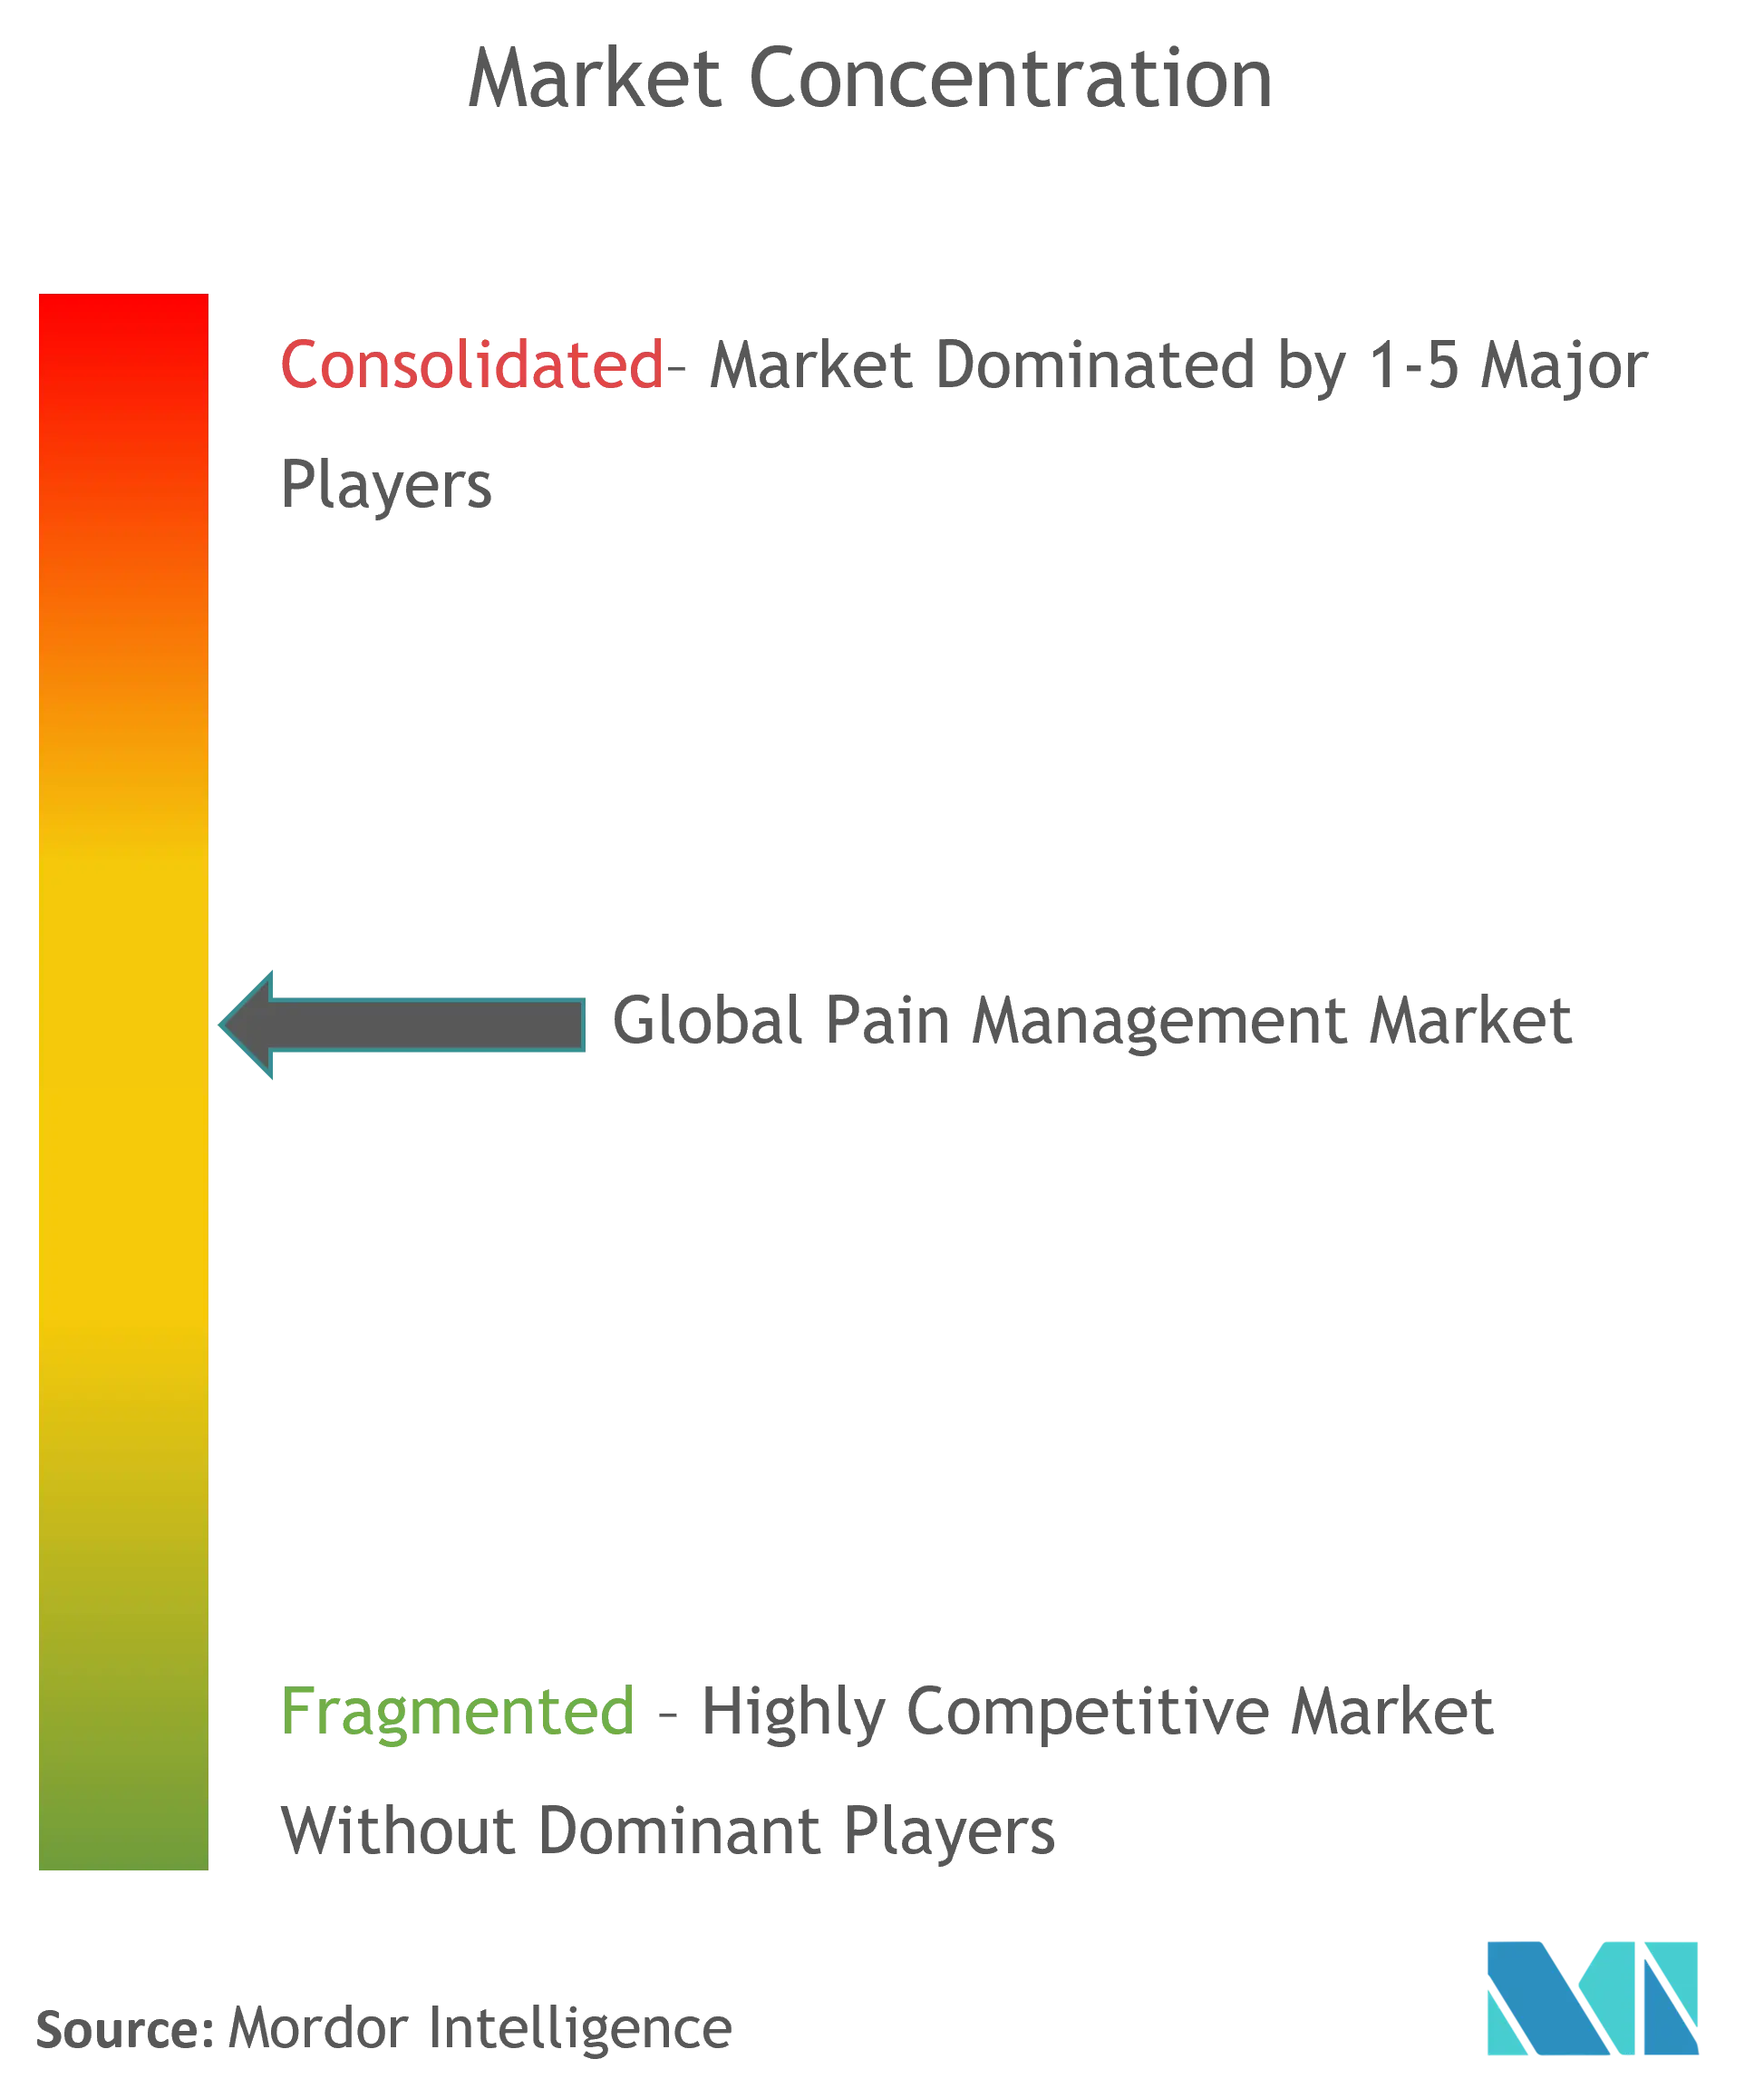 Pain Management Market Concentration